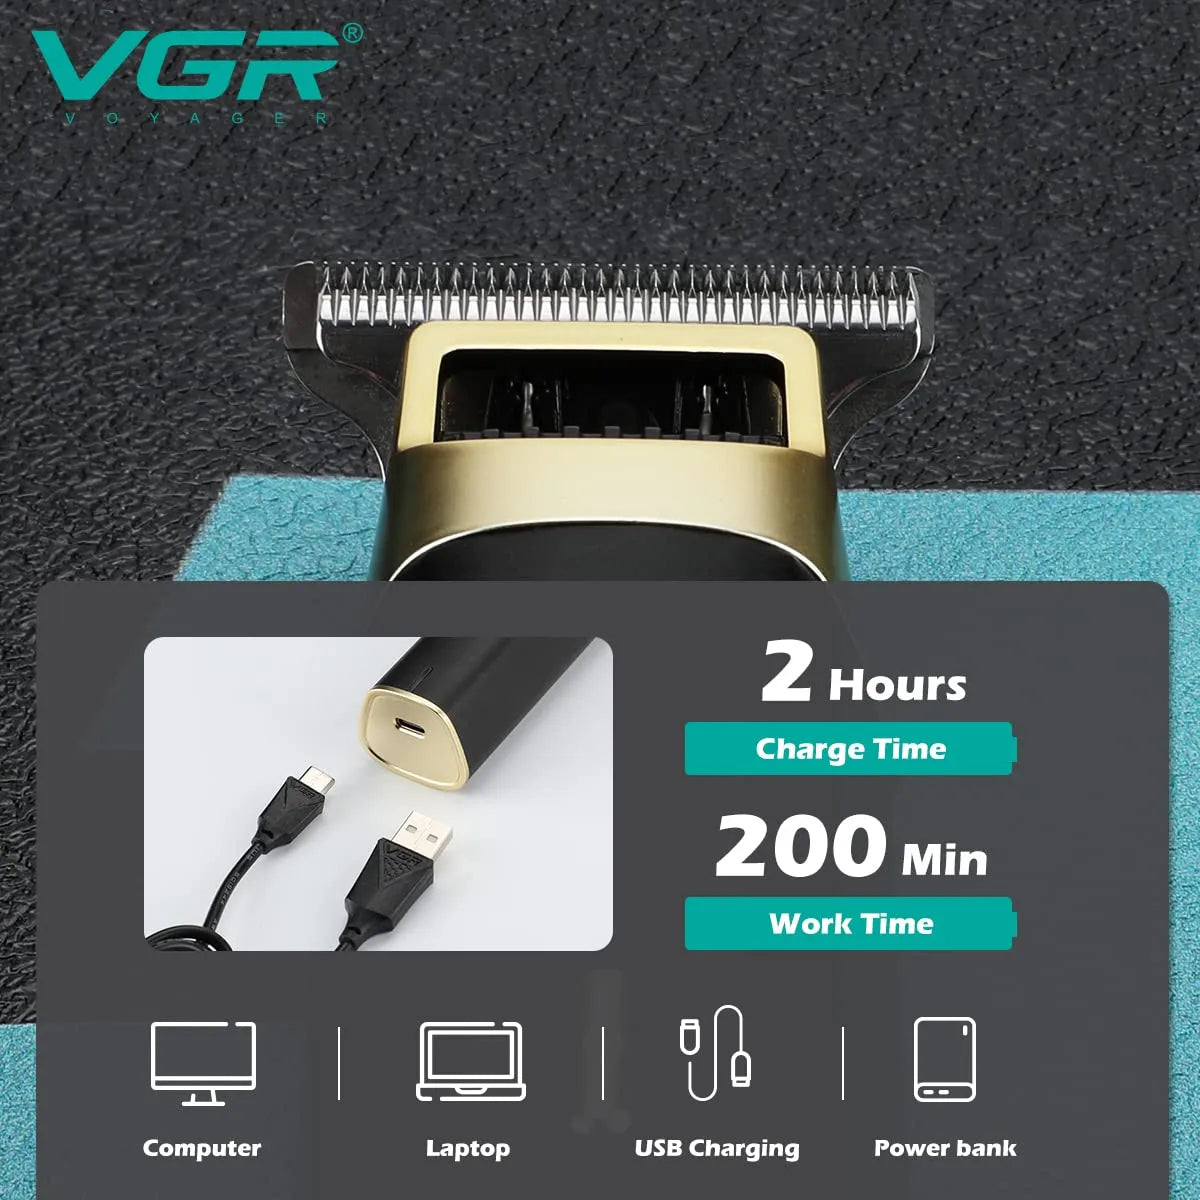 VGR V-957 Hair Trimmer For Men, Black